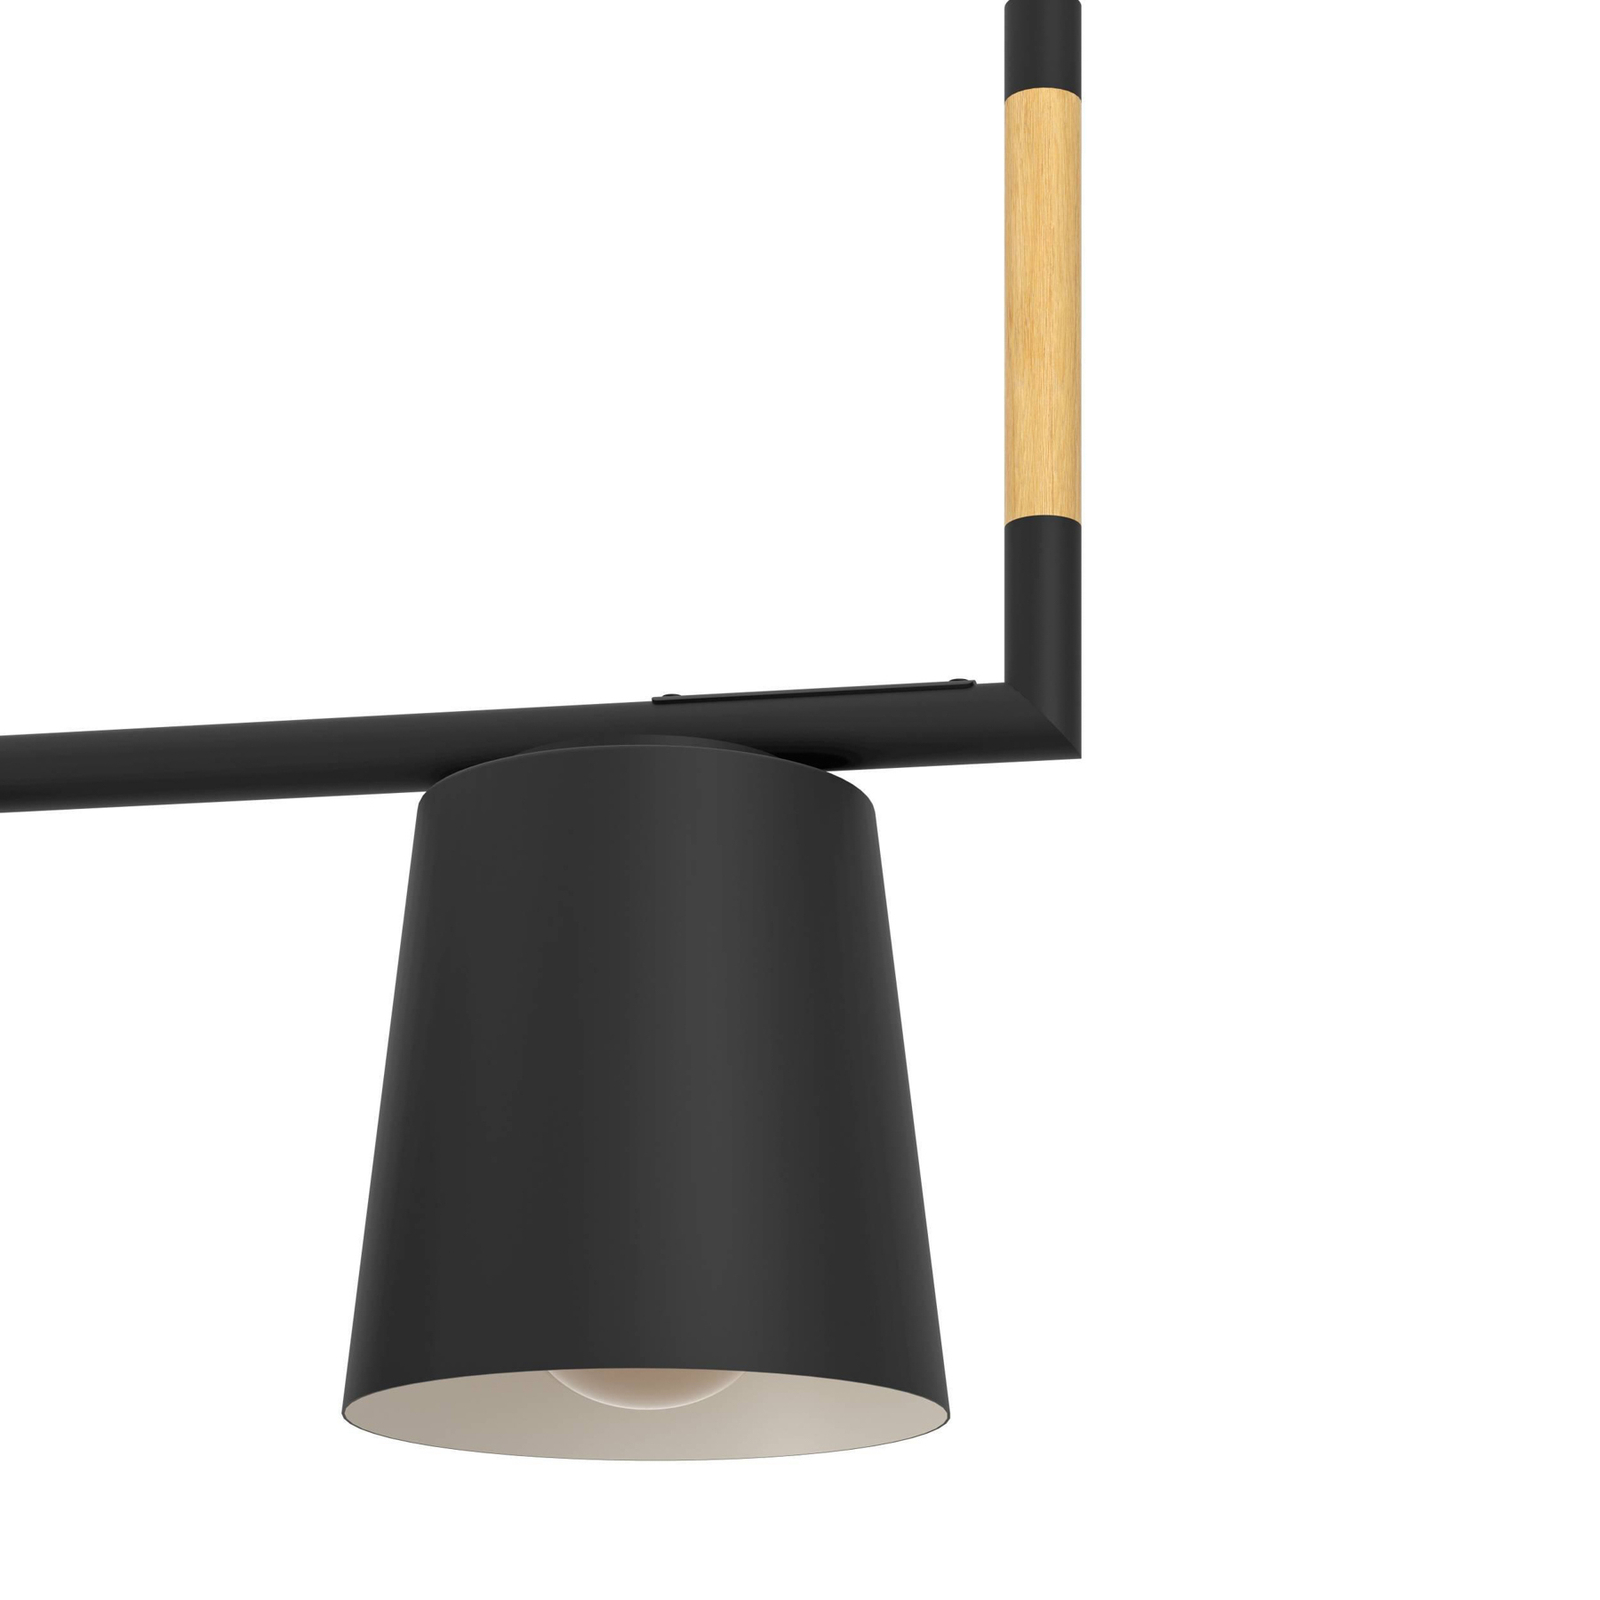 Lacey viseća svjetiljka, dužina 78 cm, crna, 3 žarulje, čelik